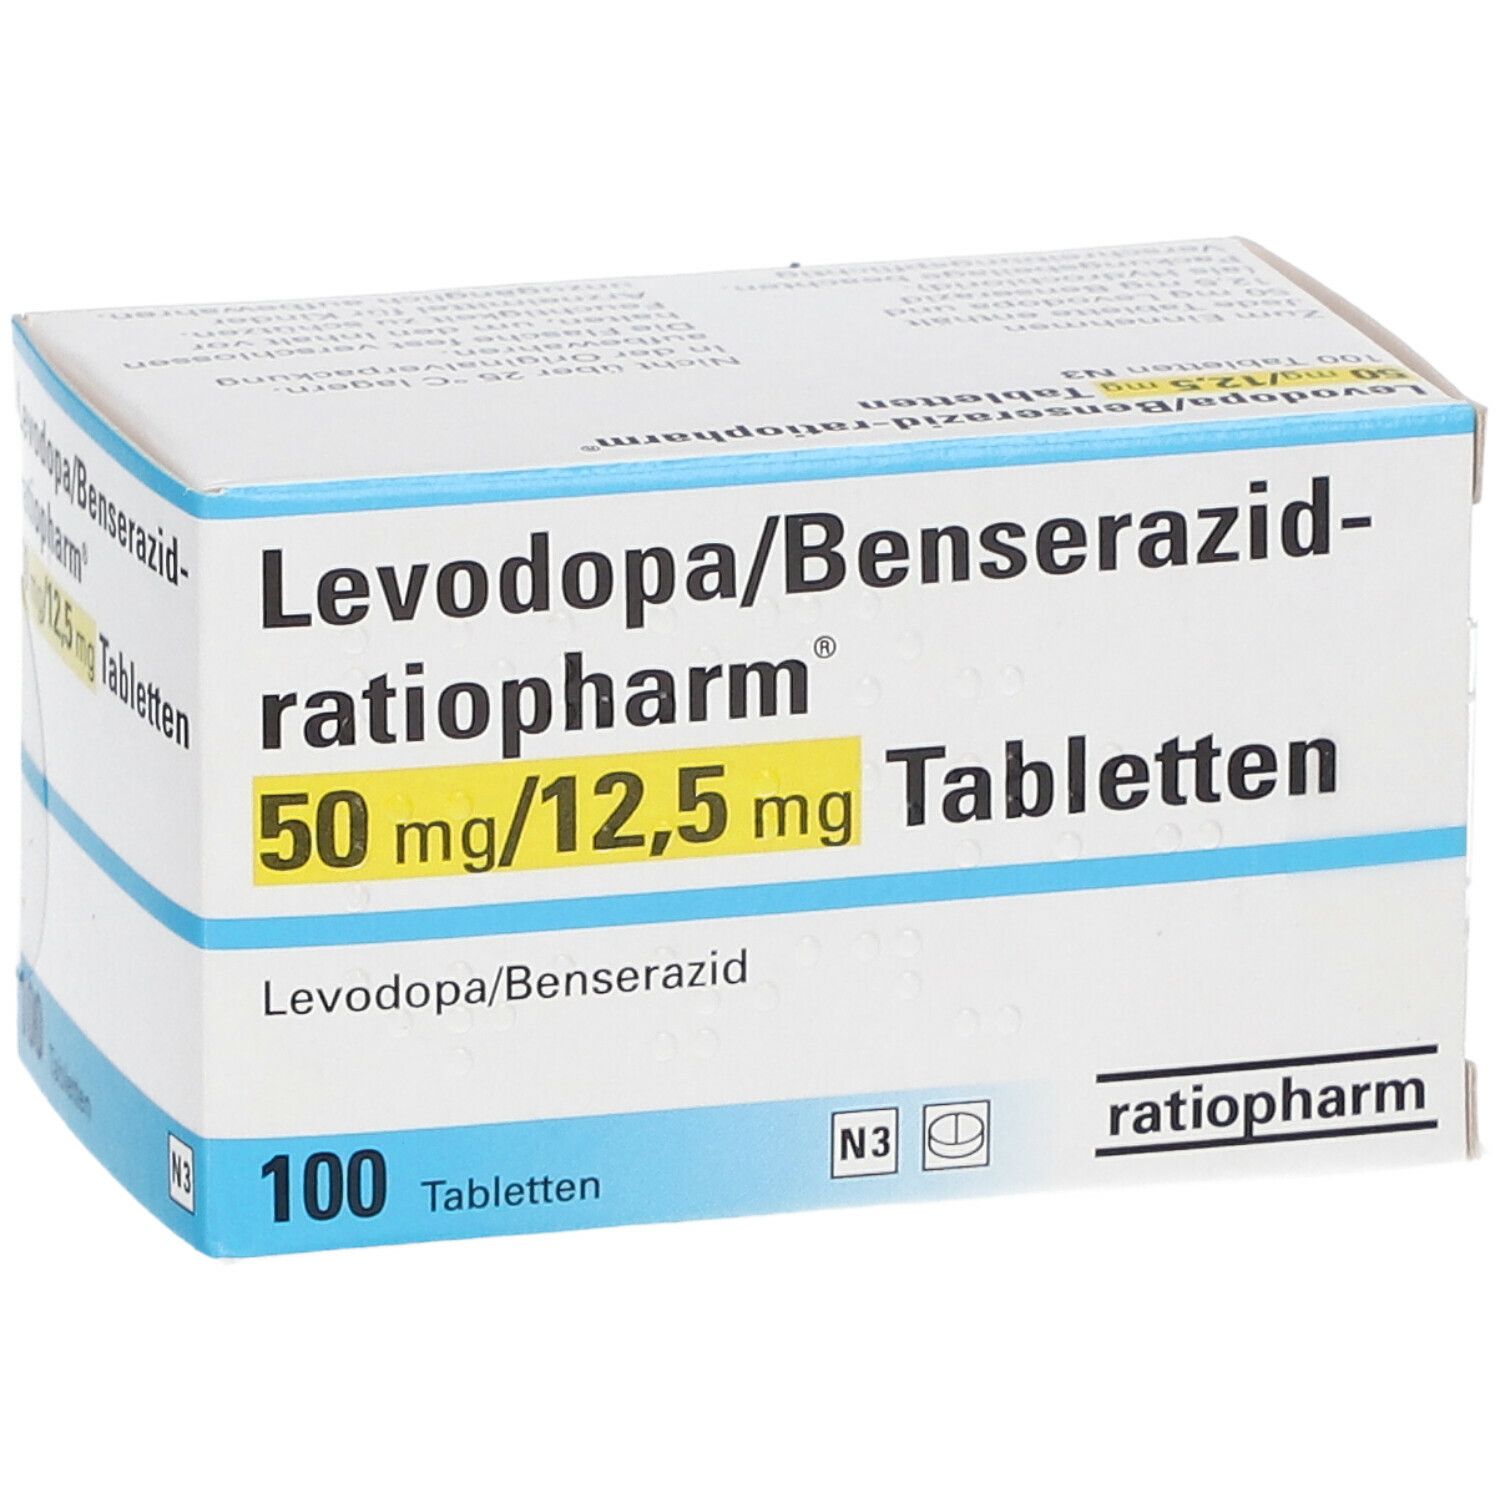 Levodopa/Benserazid-ratiopharm® 50 mg/12,5 mg